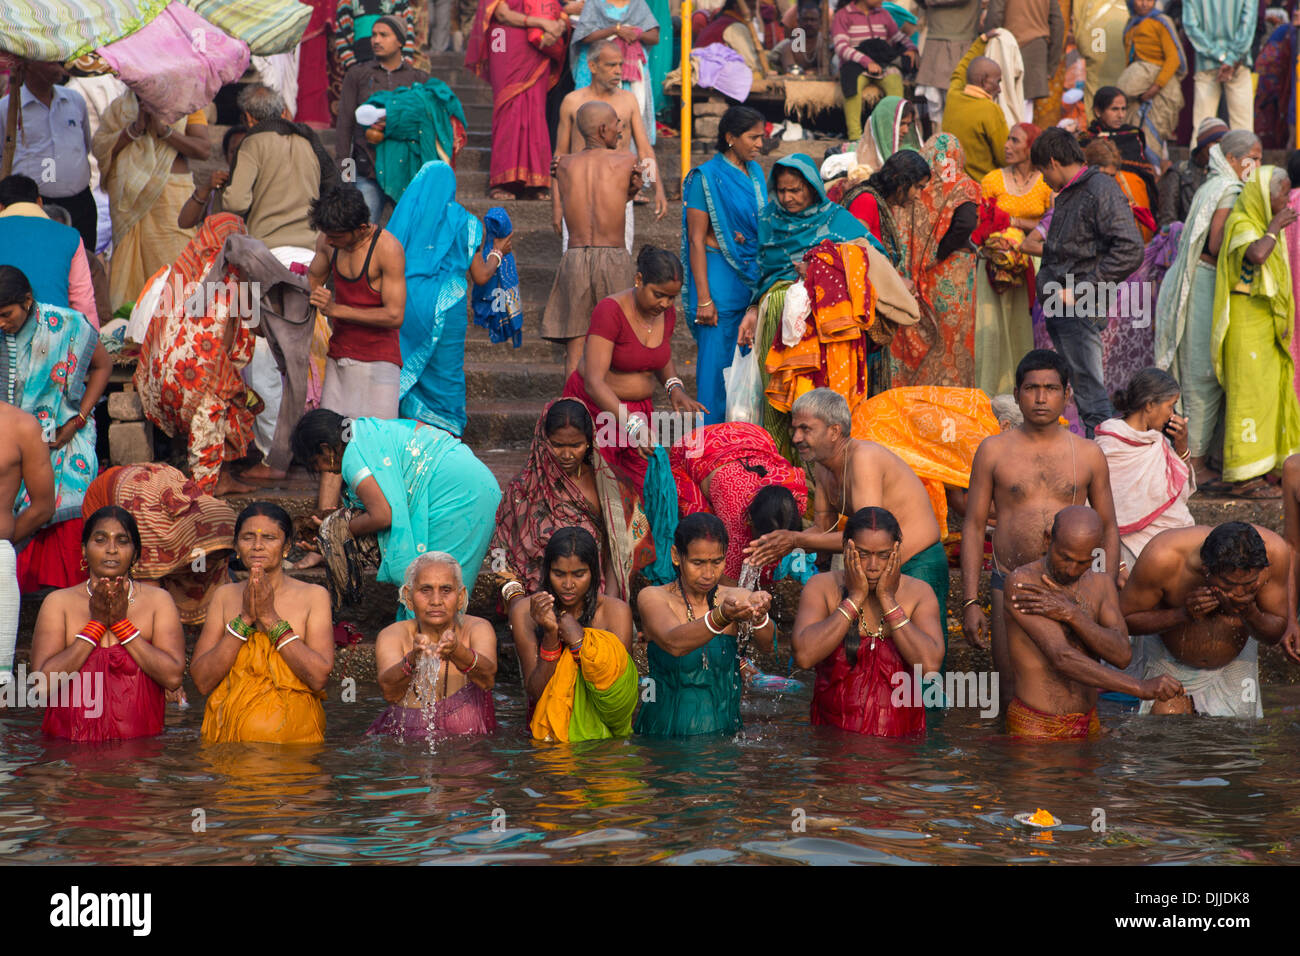 Un groupe de croyants hindous prier à l'aube submergé dans les eaux du Gange, un fleuve sacré dans la religion hindoue. Banque D'Images